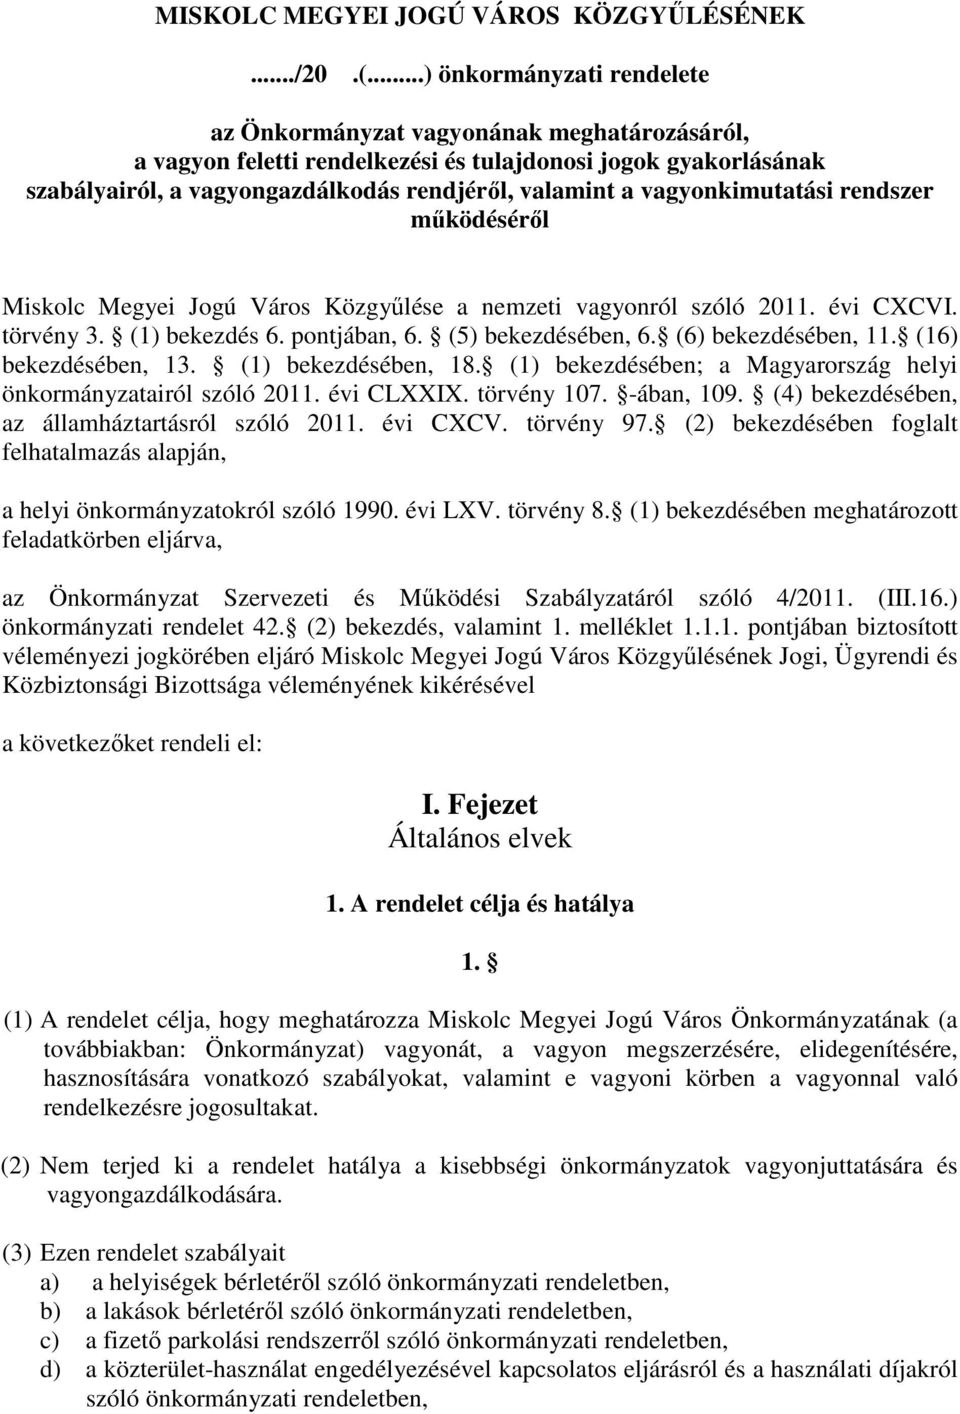 vagyonkimutatási rendszer mőködésérıl Miskolc Megyei Jogú Város Közgyőlése a nemzeti vagyonról szóló 2011. évi CXCVI. törvény 3. (1) bekezdés 6. pontjában, 6. (5) bekezdésében, 6.